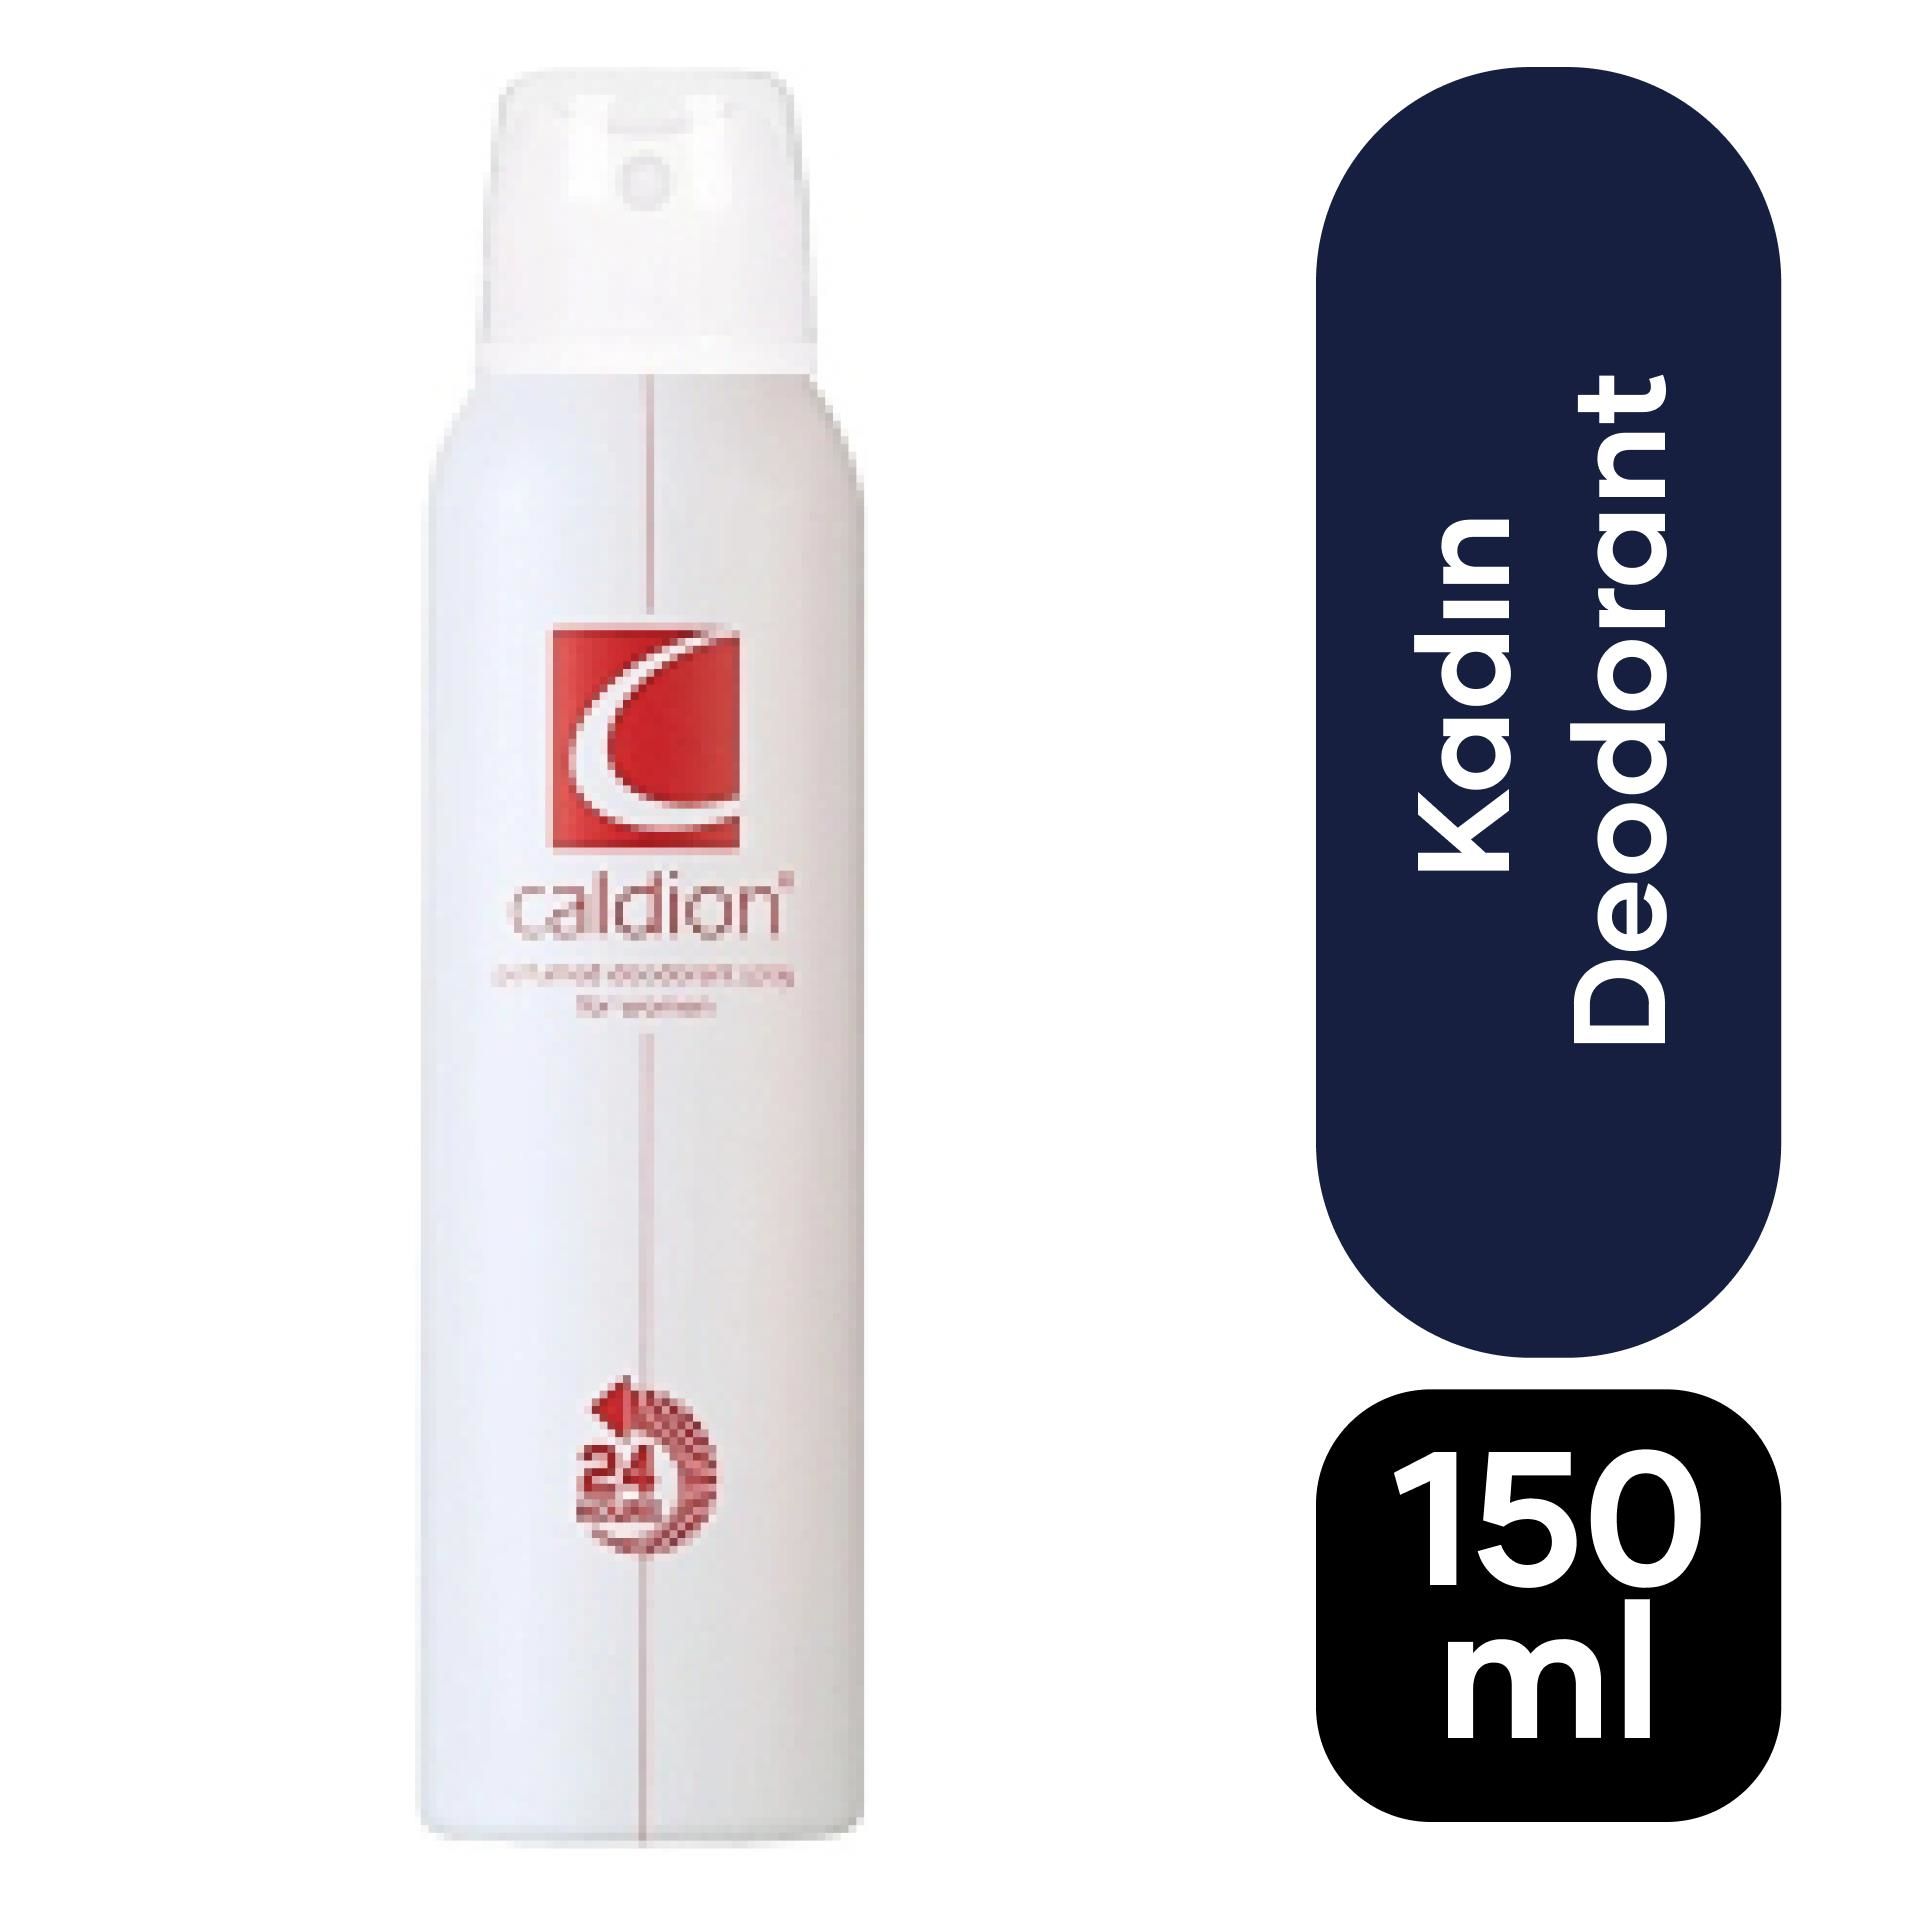 Caldion Deodorant For Women 150ml